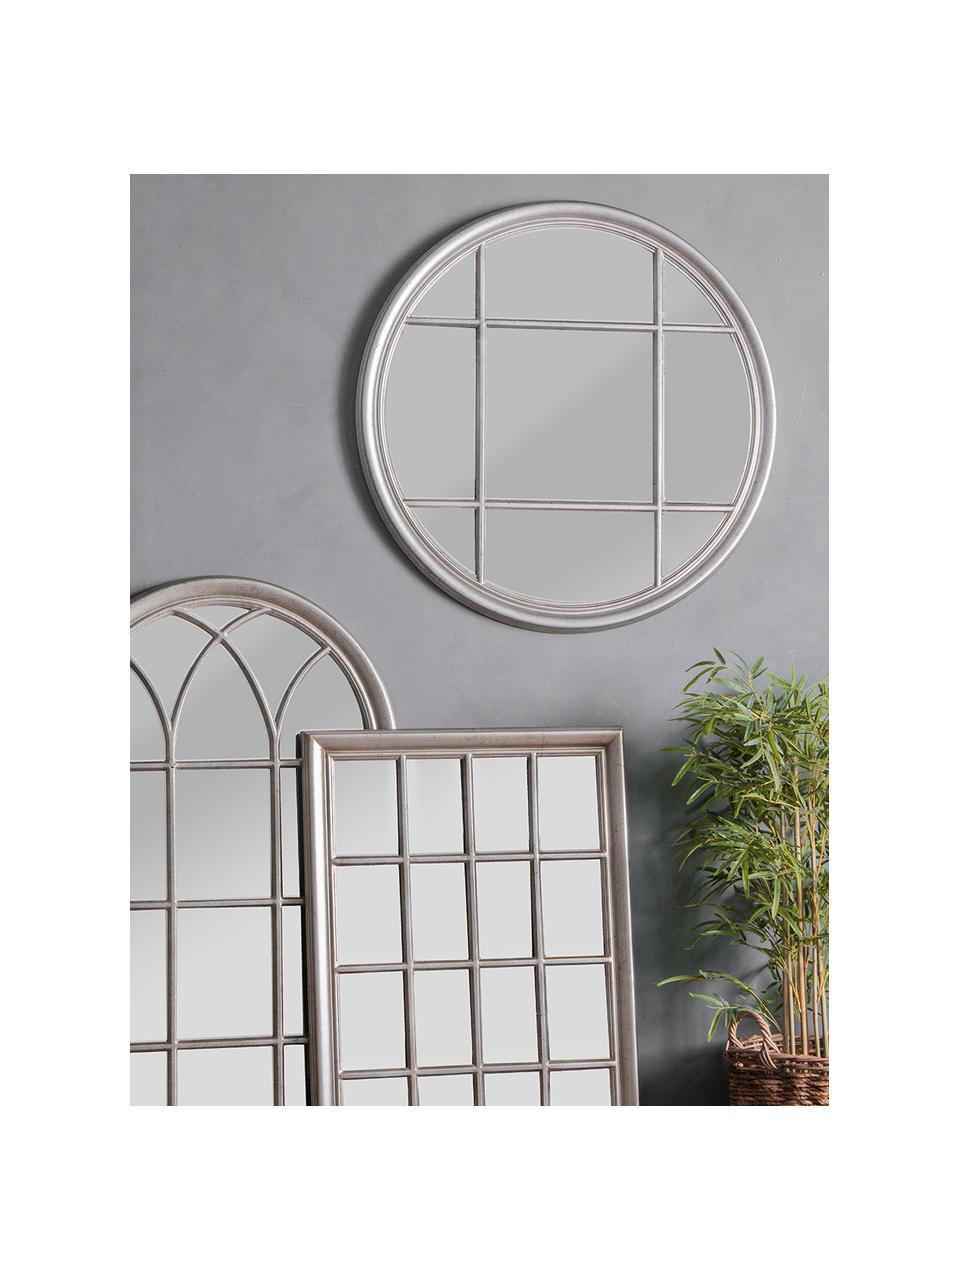 Specchio rotondo da parete Eccleston, Cornice: legno, verniciato, Superficie dello specchio: lastra di vetro, Argento, Ø 100 x Prof. 4 cm